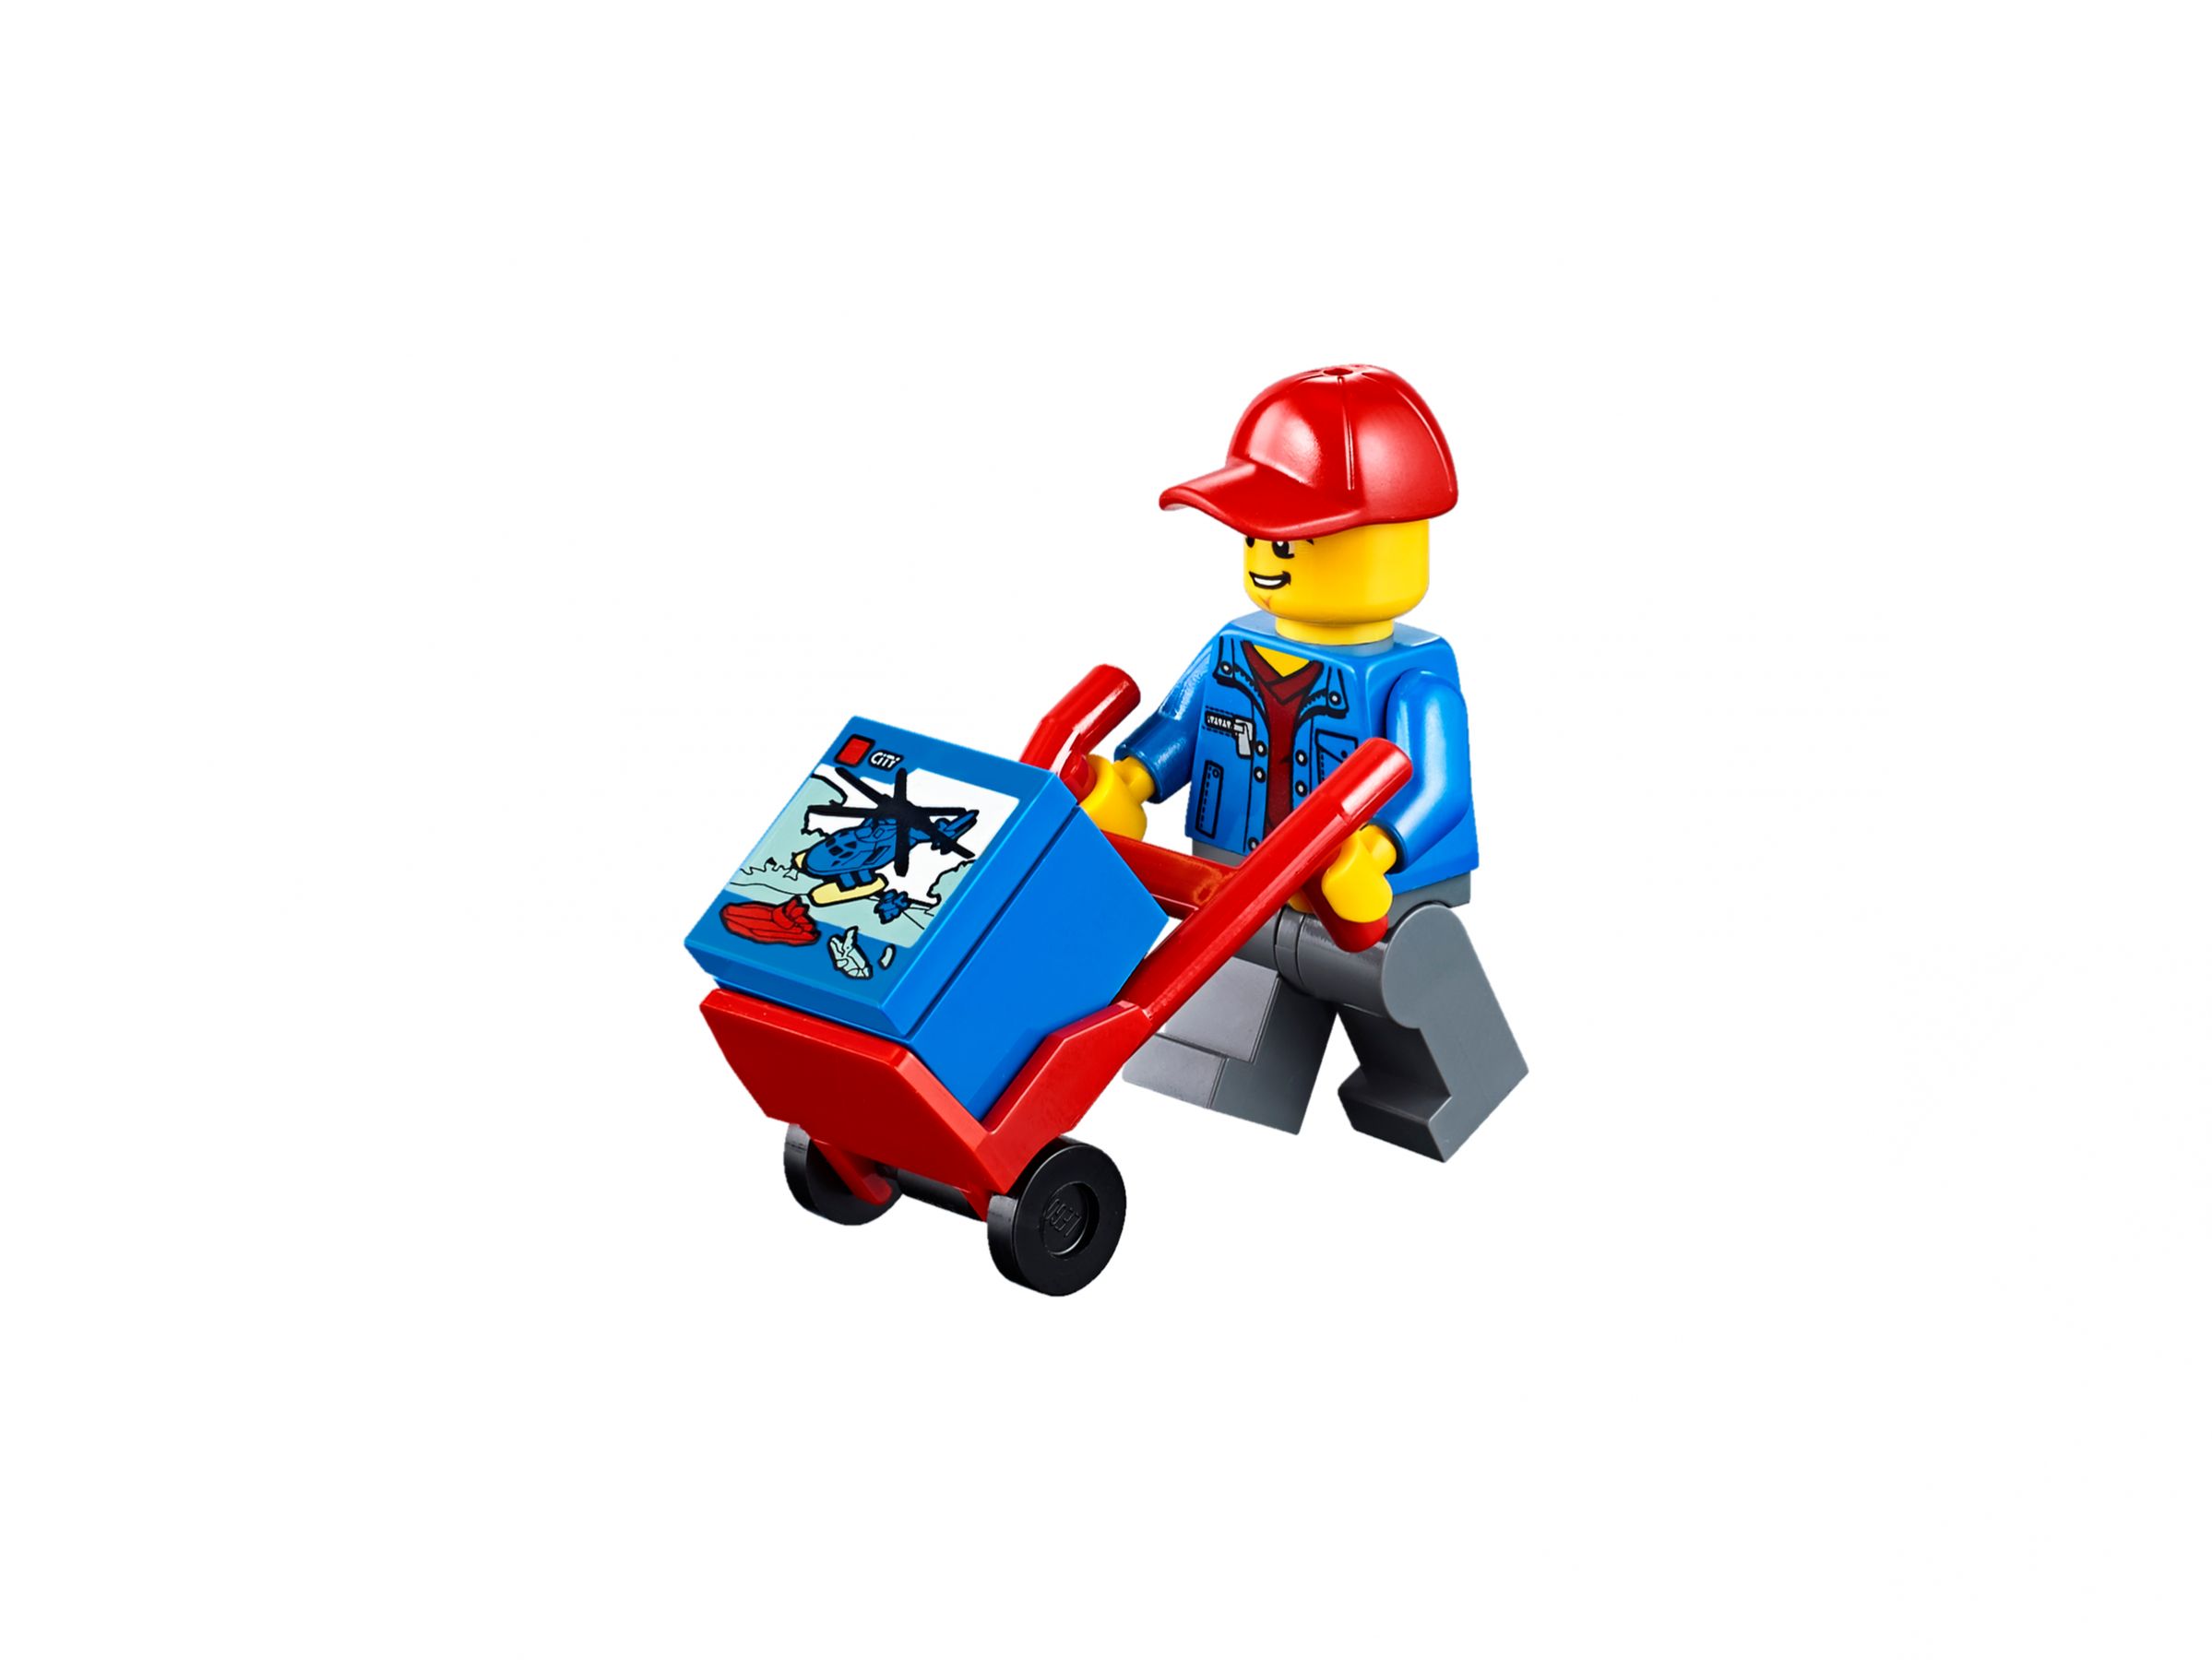 LEGO City 60169 Frachtterminal LEGO_60169_alt9.jpg